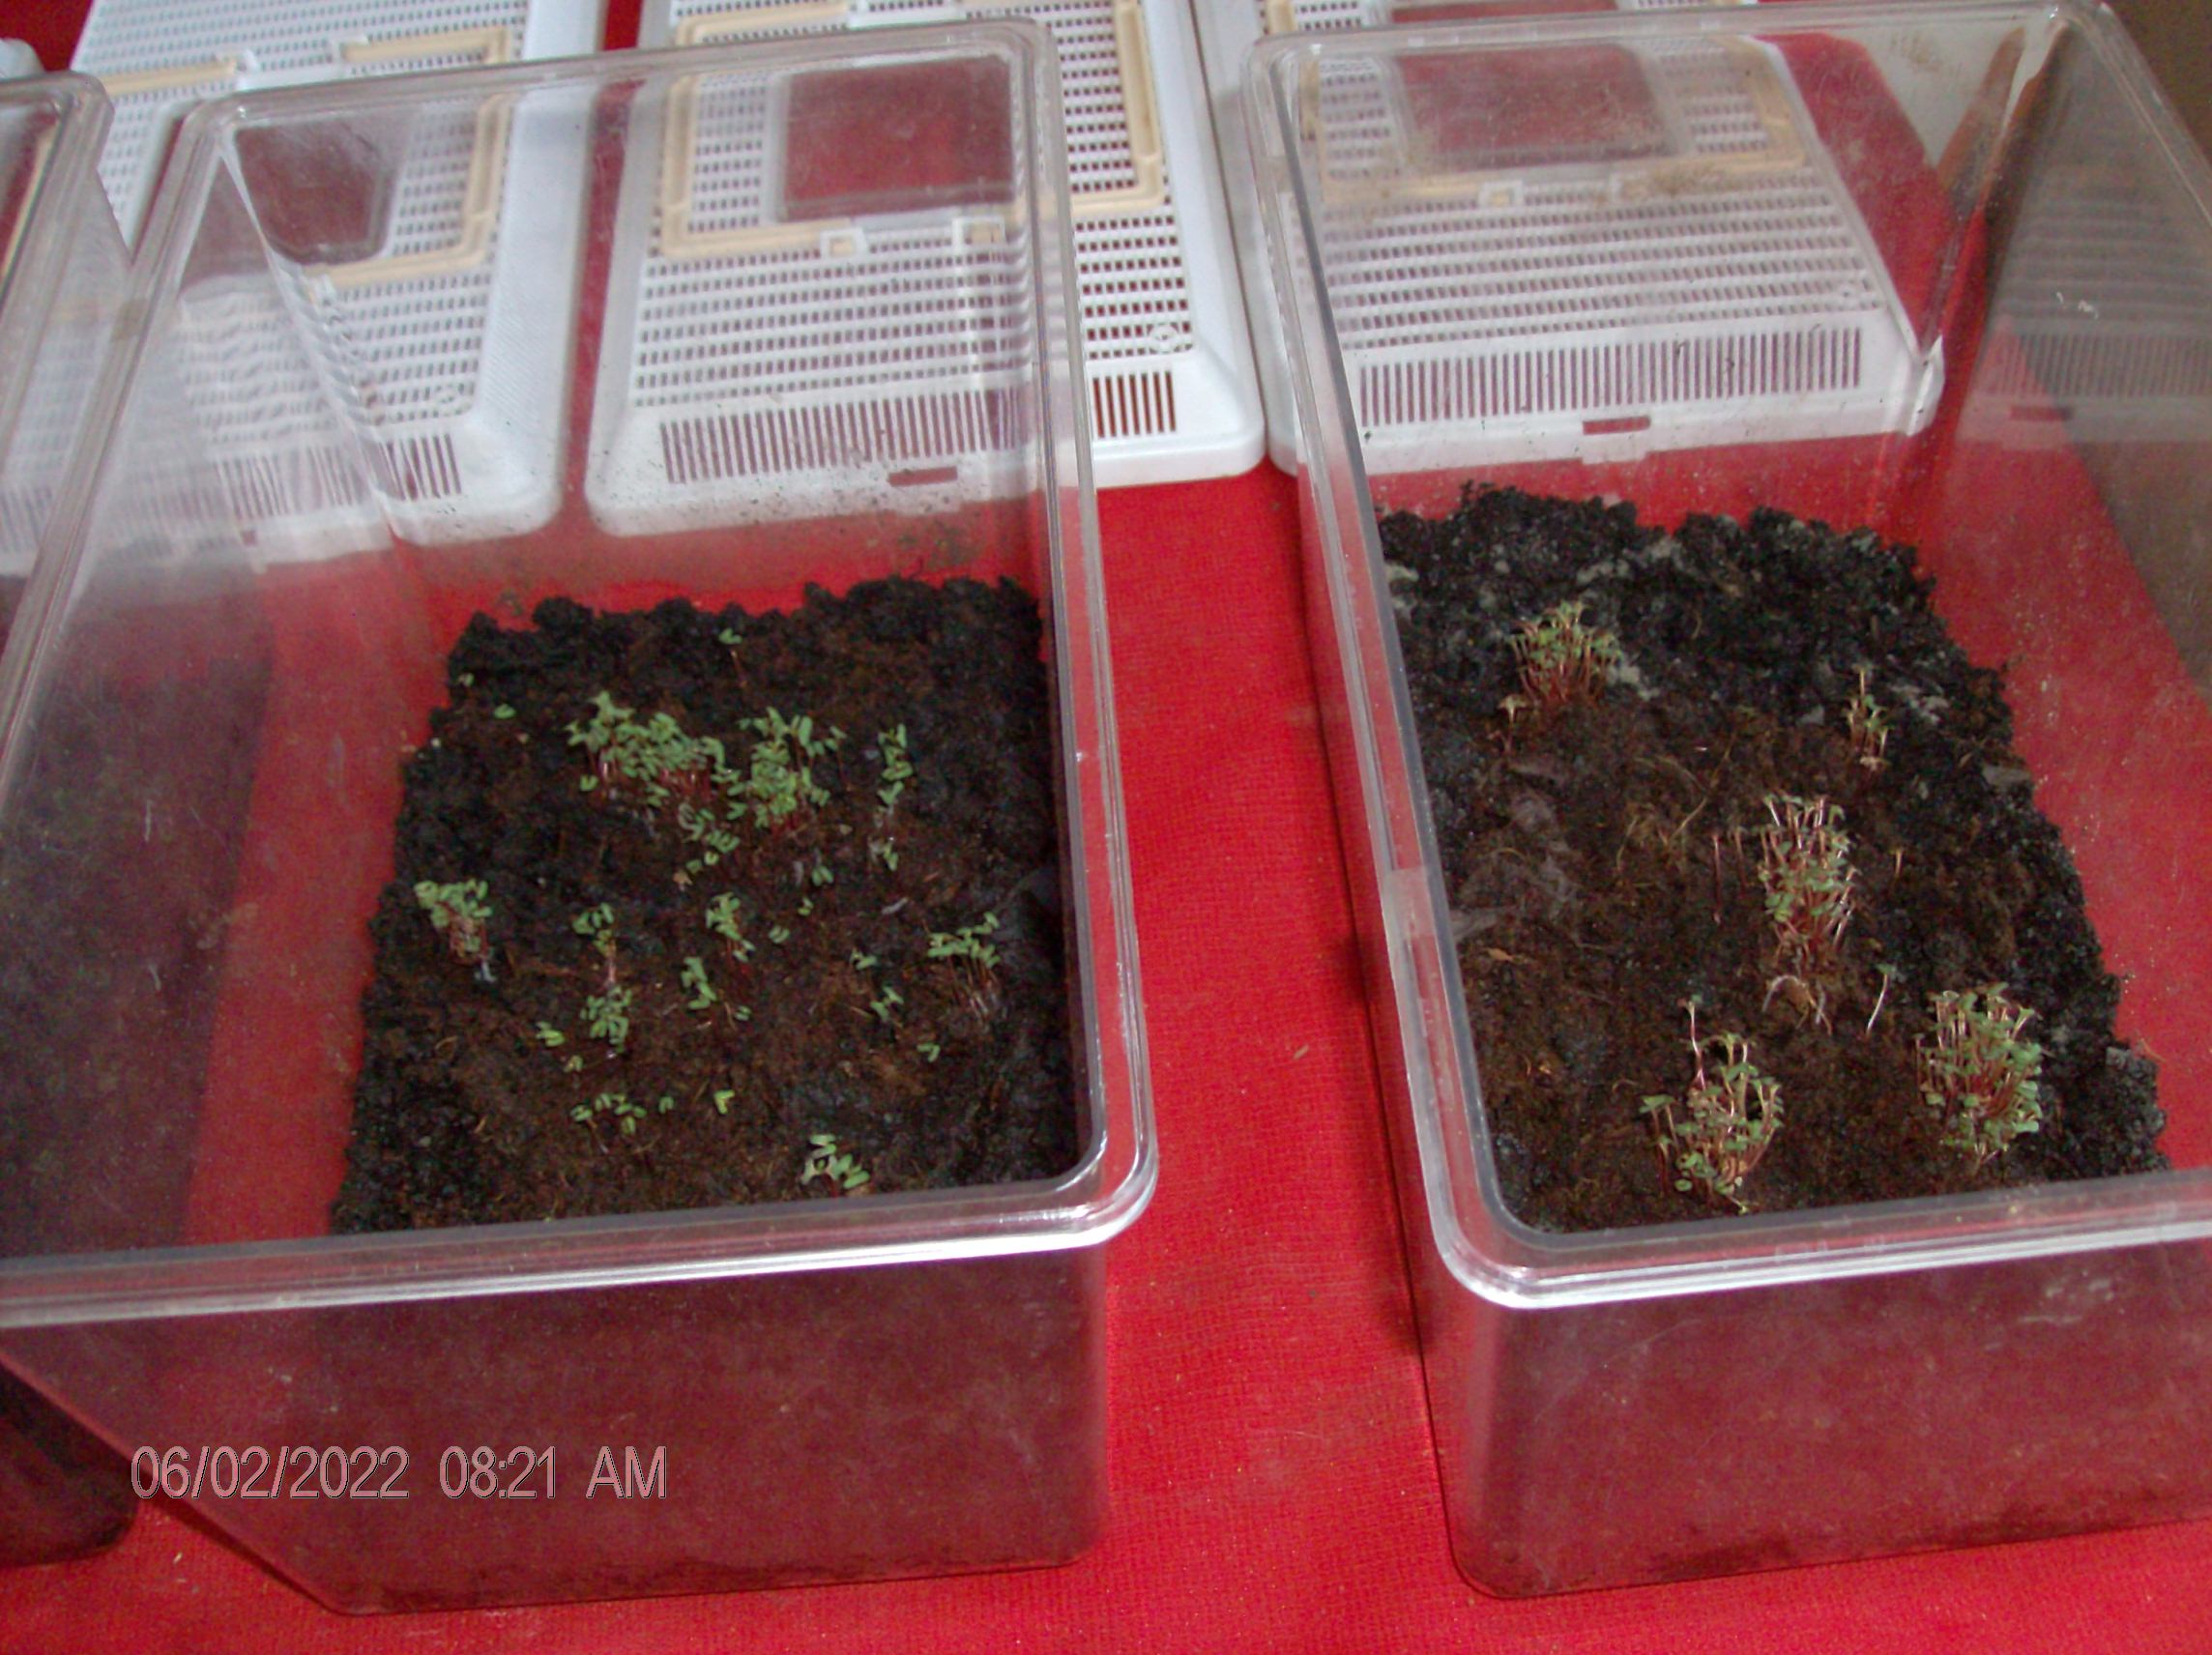 HPIM2074 seedlings E. cinerea.JPG